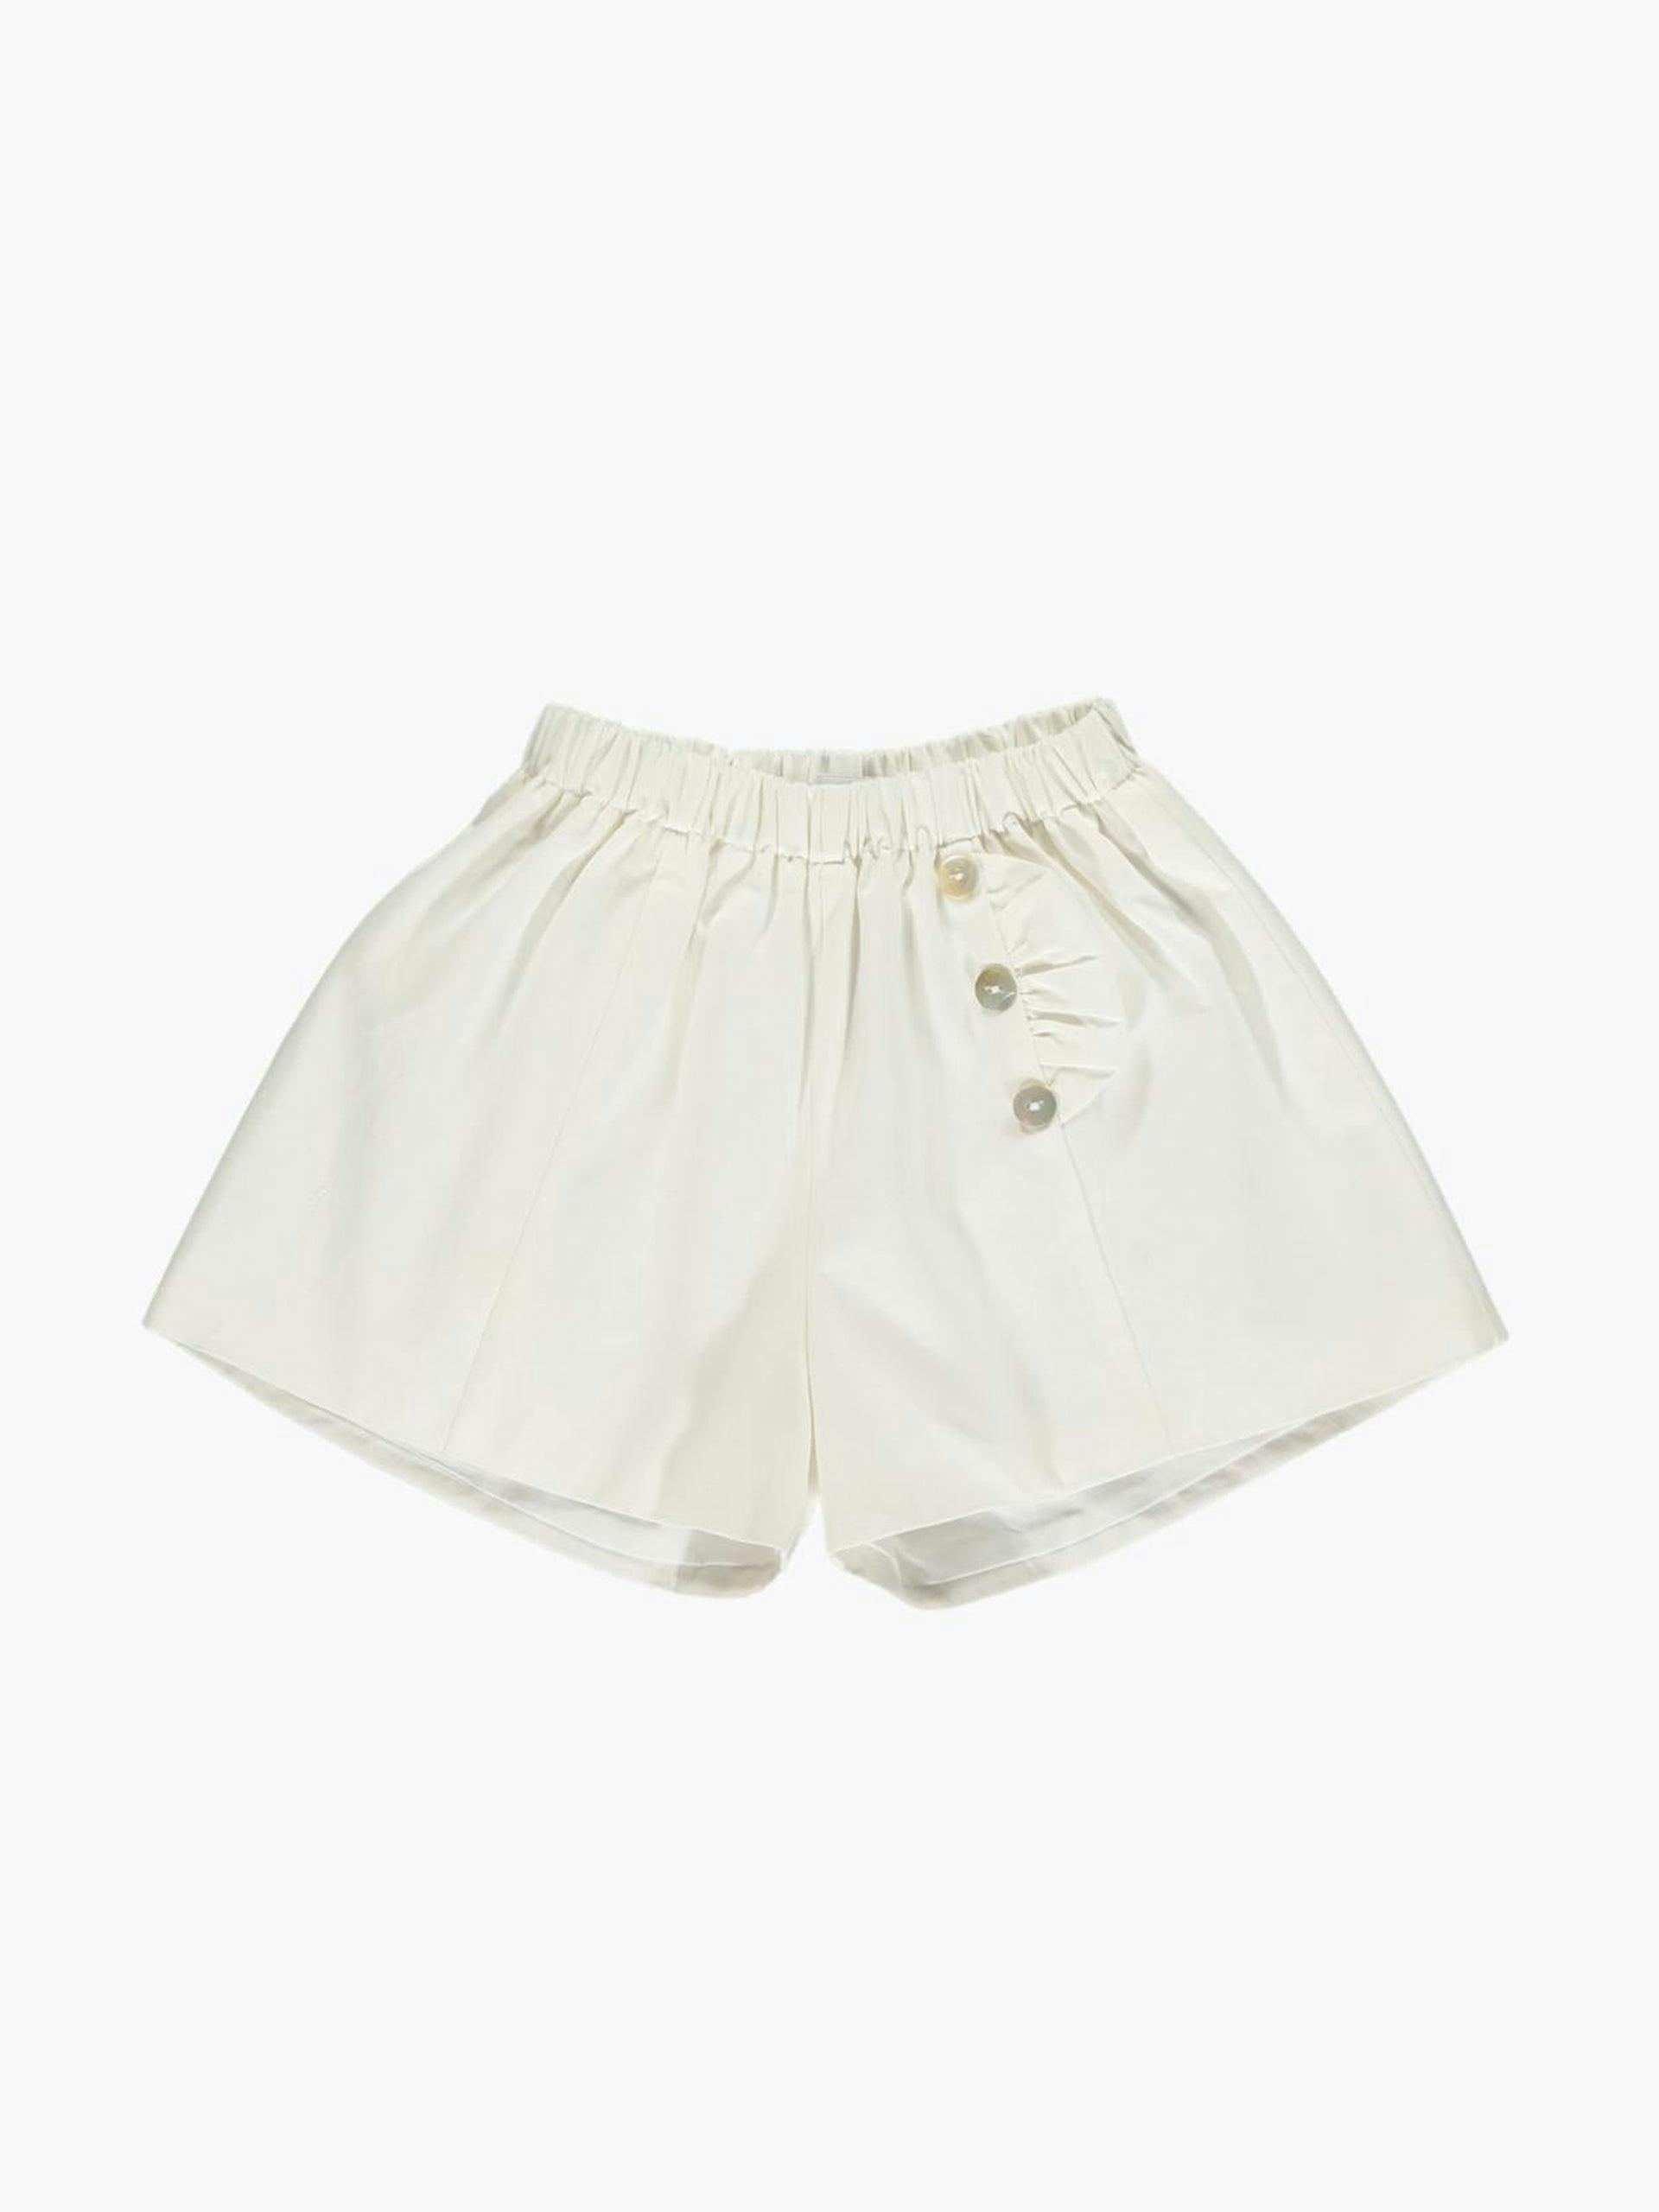 Elisa white shorts